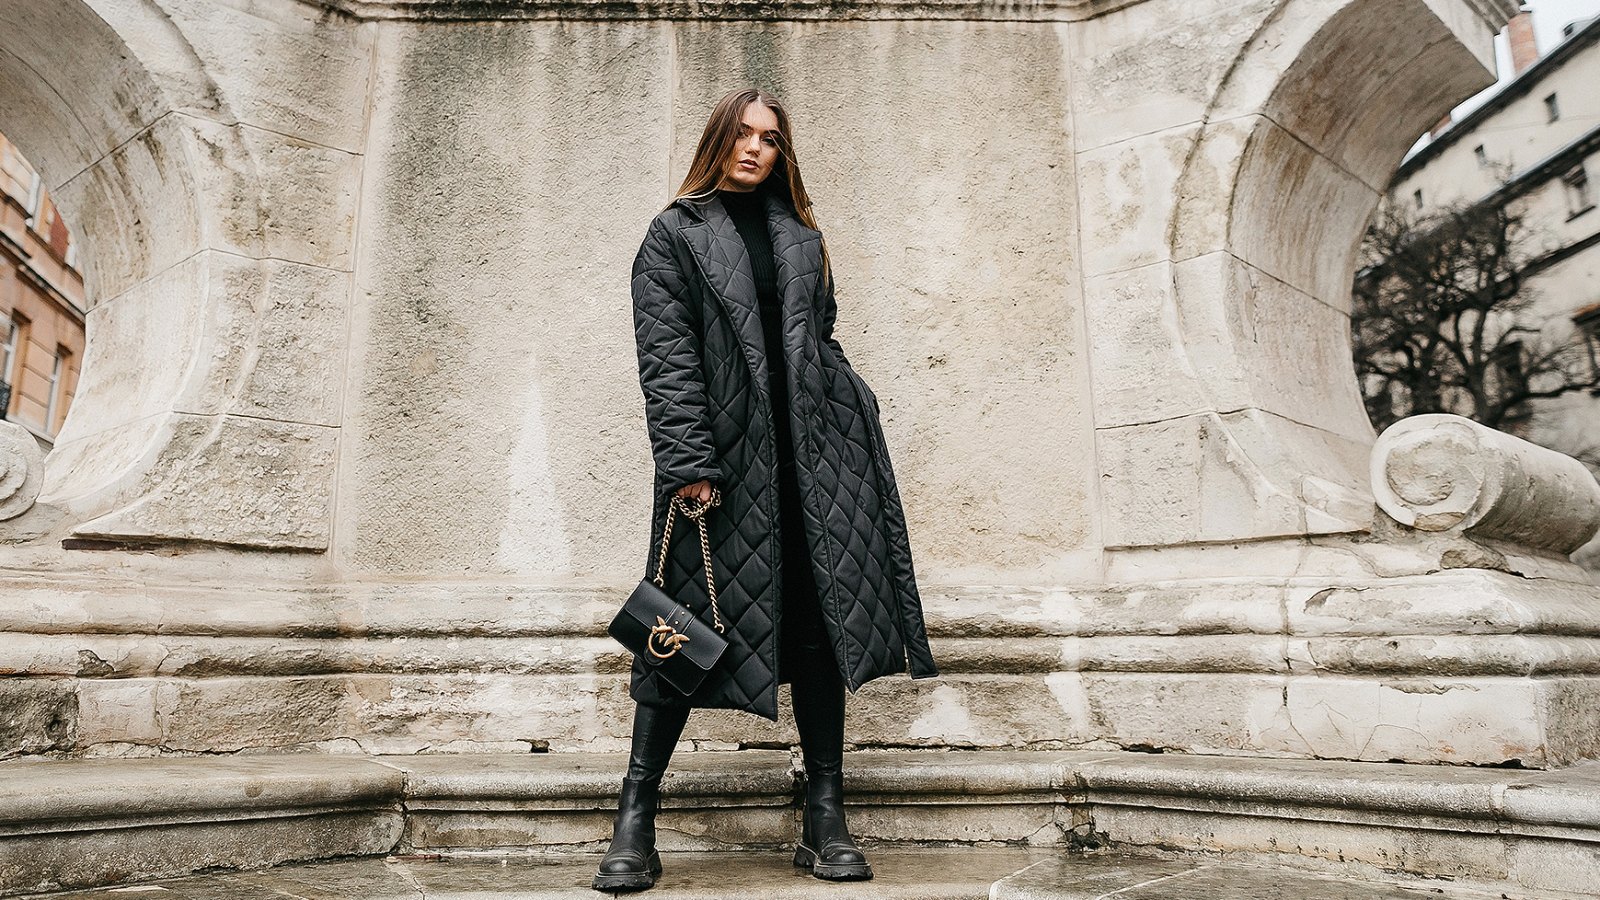 Zara-Style Winter Fashion Finds — All Under $40